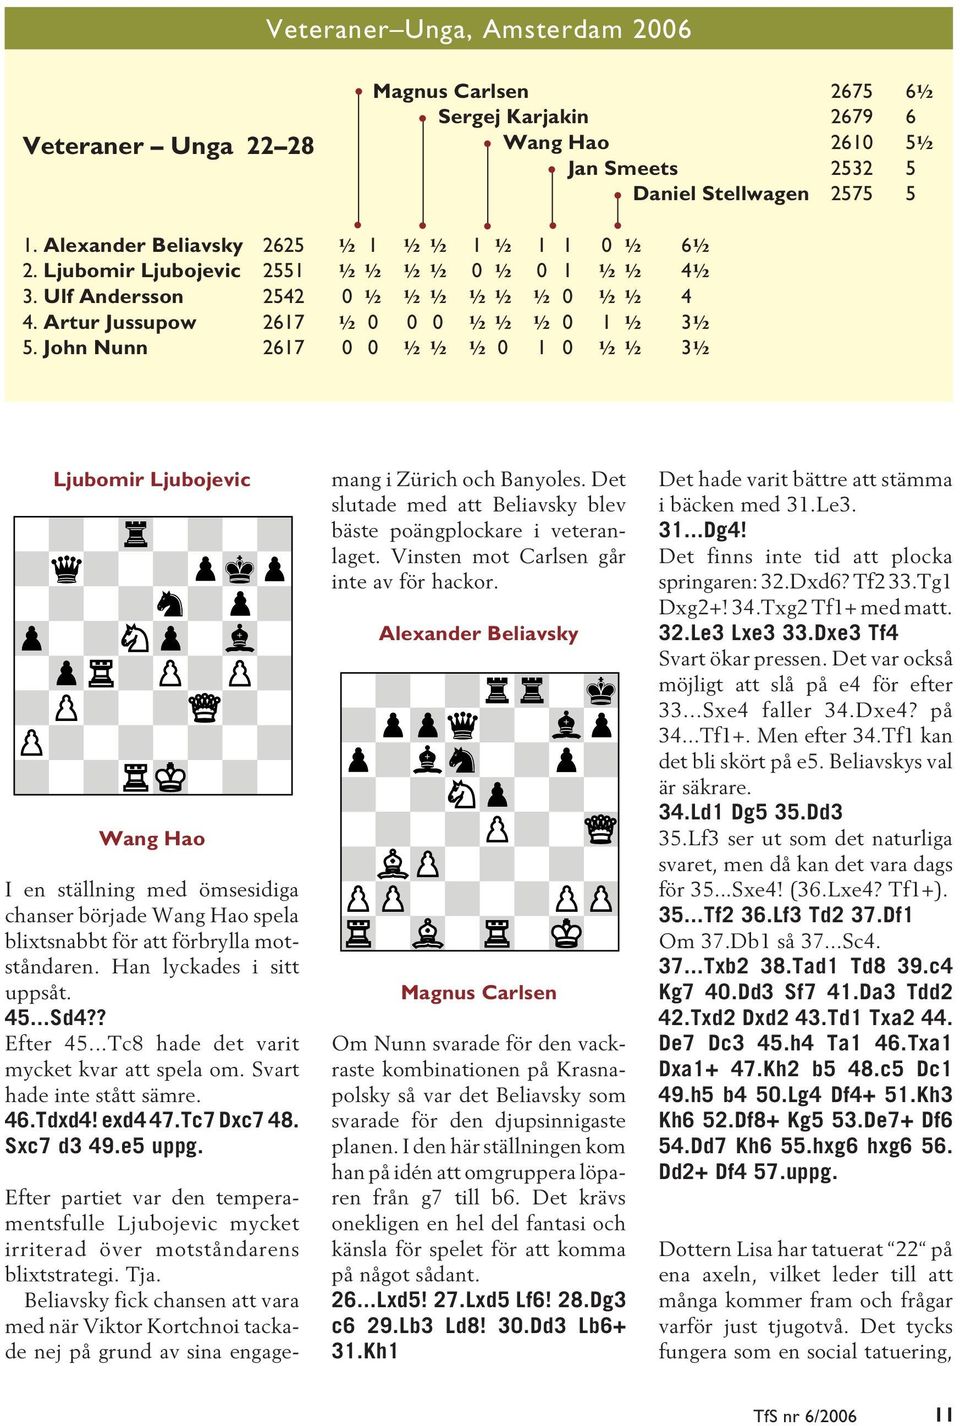 John Nunn 2617 0 0 ½½ ½ 0 1 0 ½½ 3½ Ljubomir Ljubojevic Wang Hao I en ställning med ömsesidiga chanser började Wang Hao spela blixtsnabbt för att förbrylla motståndaren. Han lyckades i sitt uppsåt.